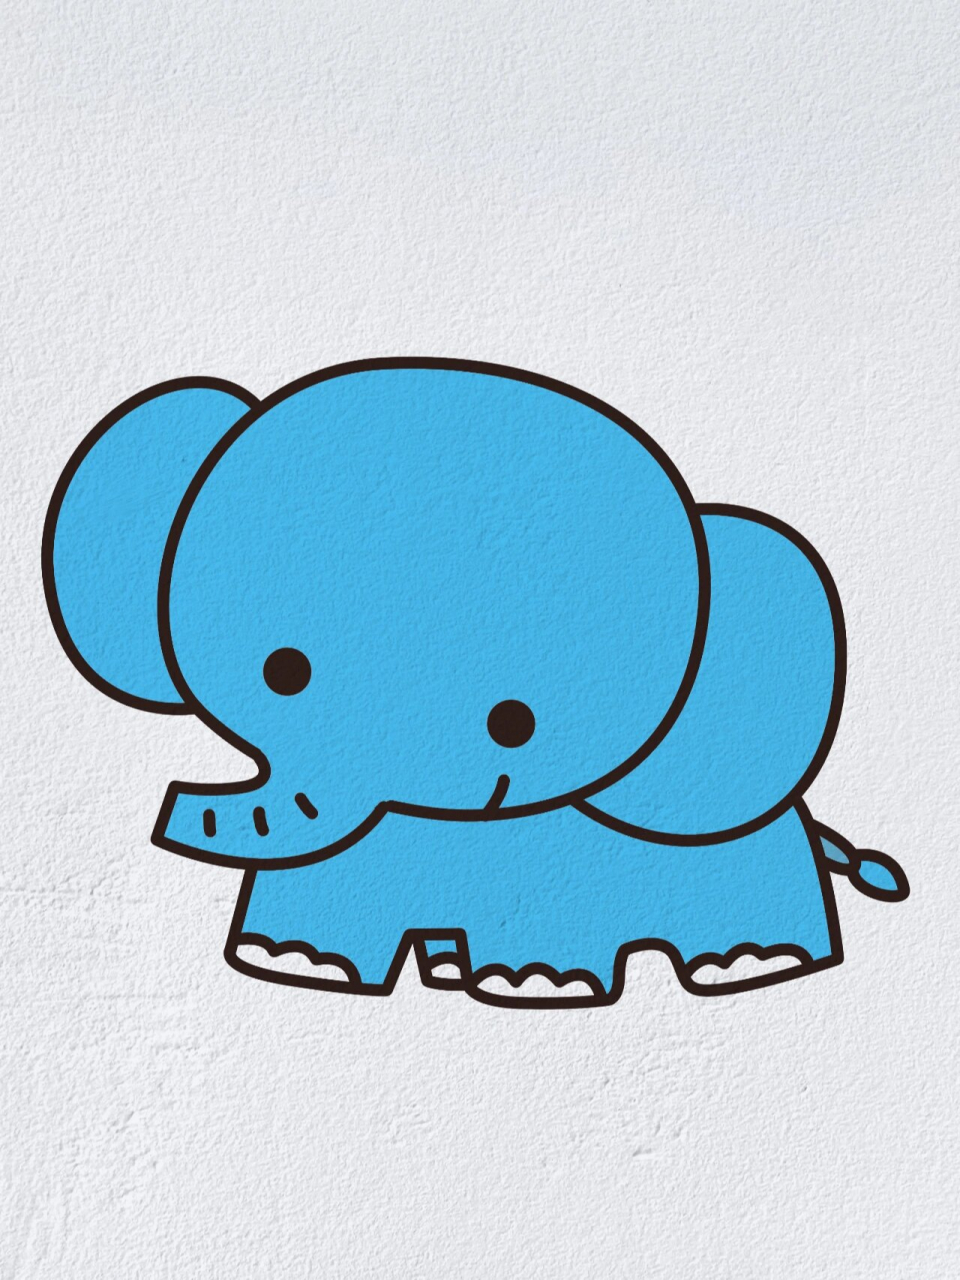 动物简笔画之可爱的小象(内附过程图)